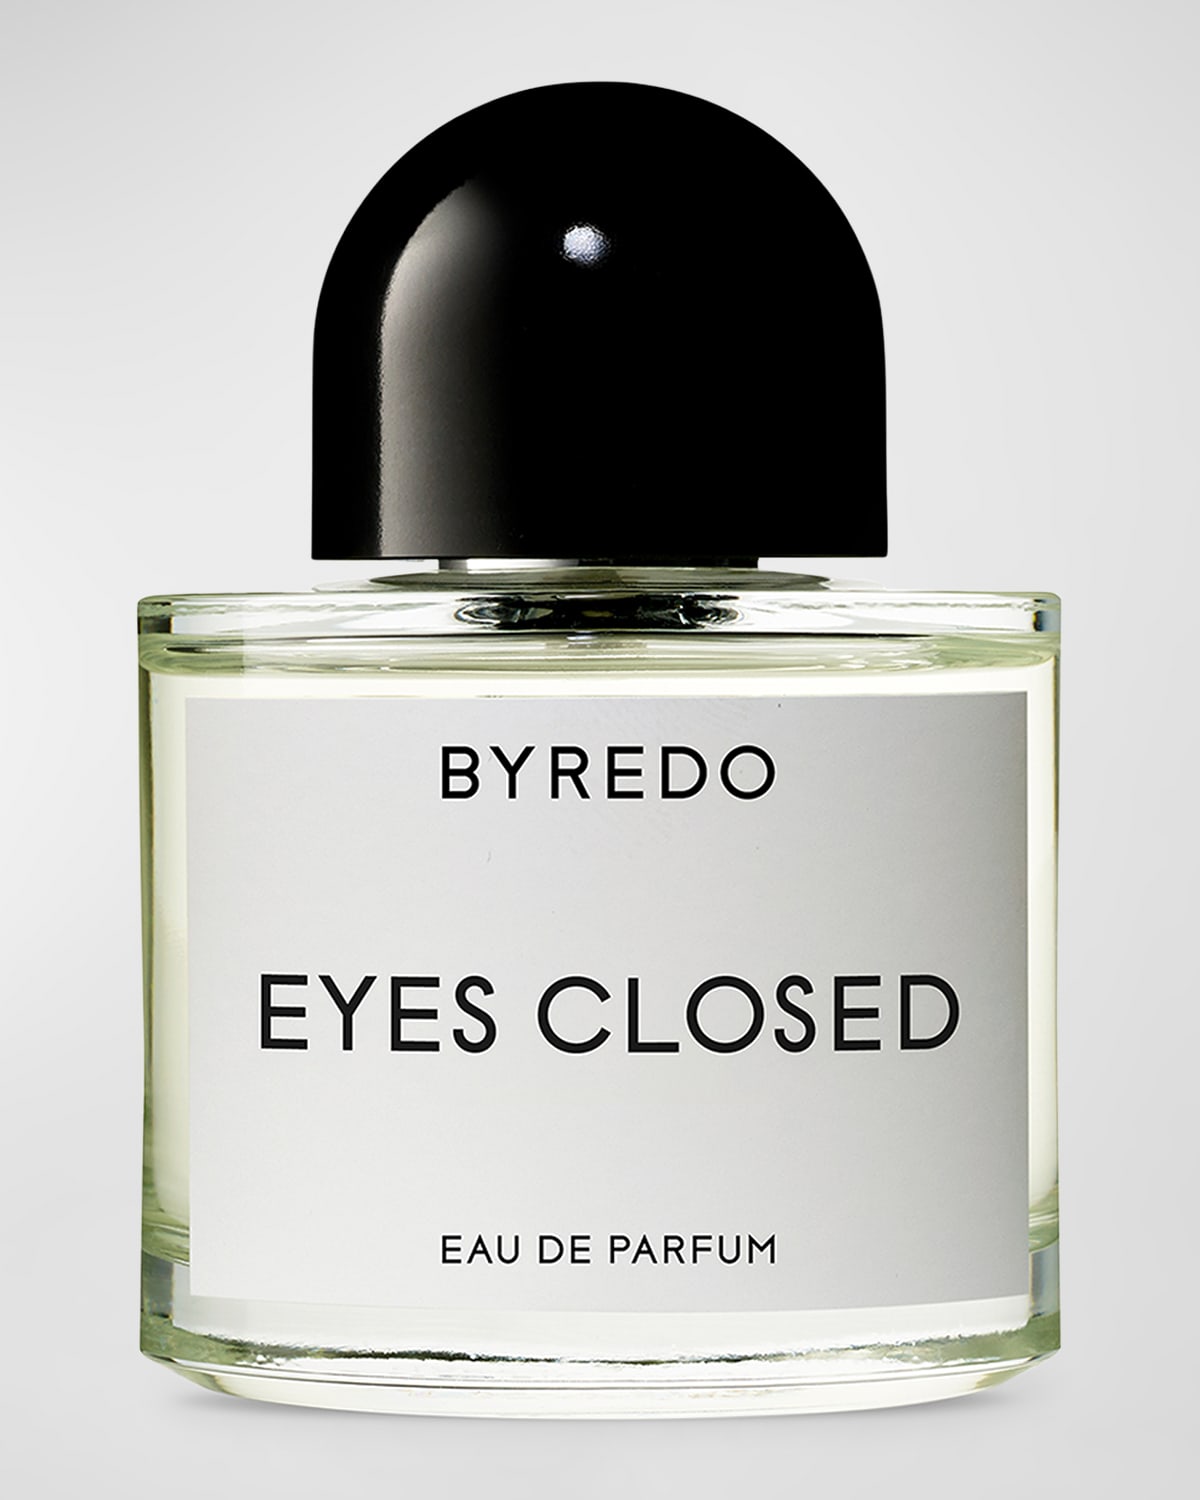 Eyes Closed Eau de Parfum, 1.7 oz.